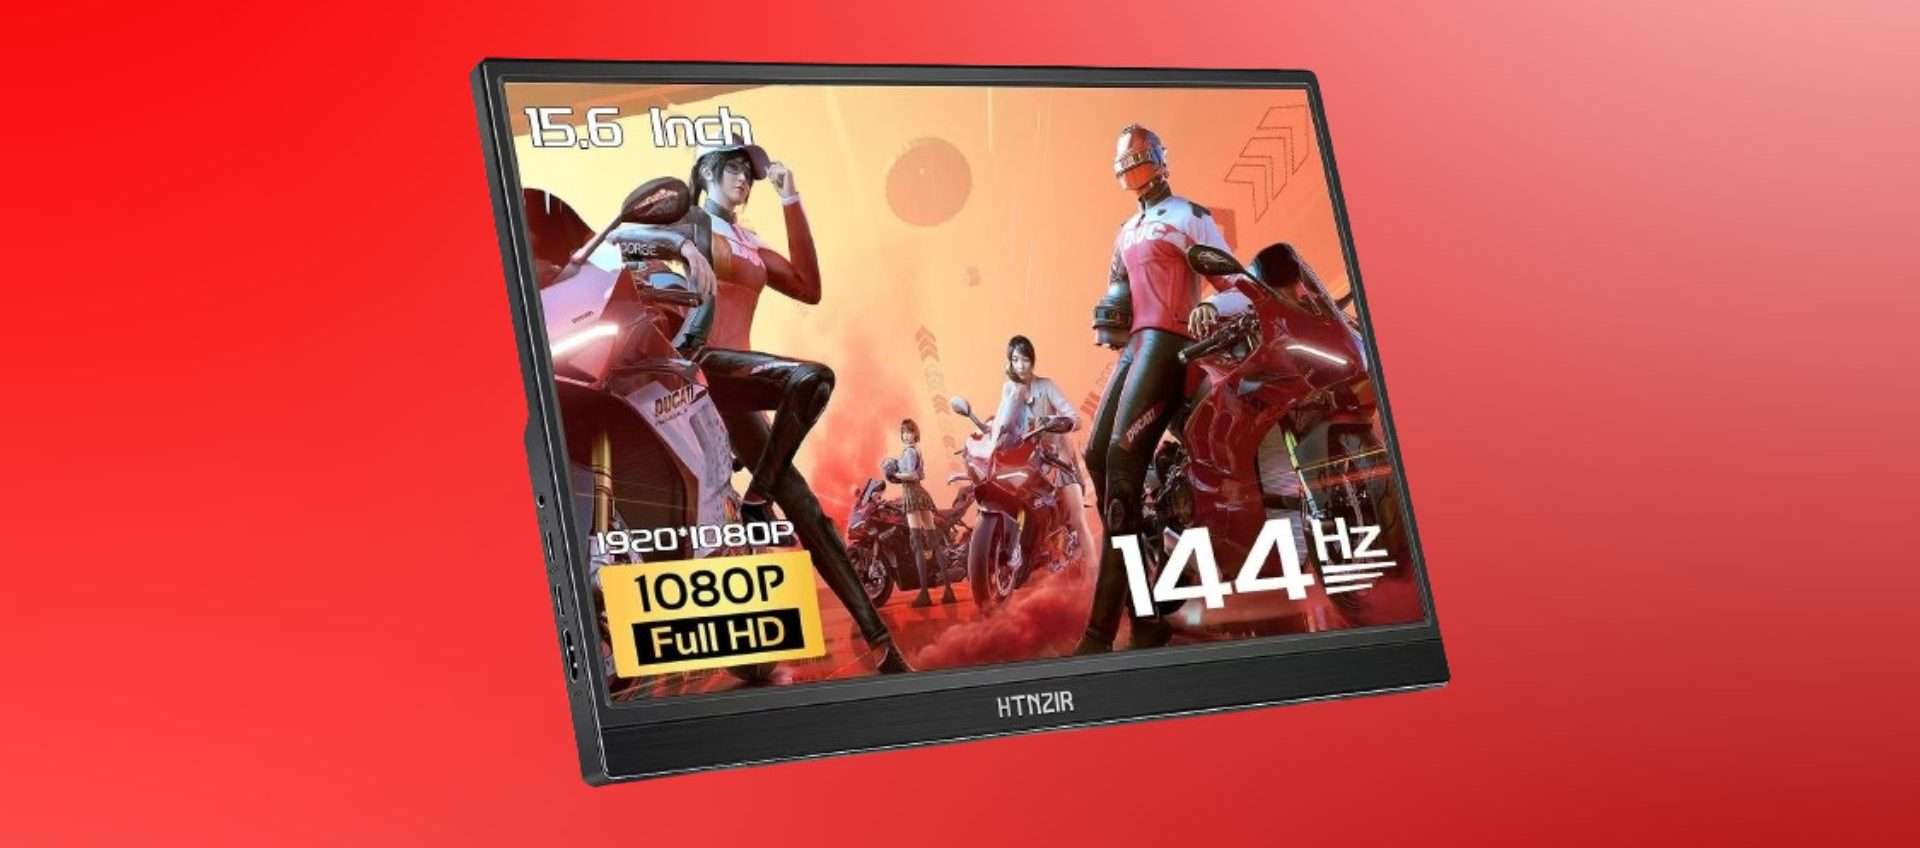 Solo 89,99€ per questo monitor portatile da gaming: perfetto per PS5 e Xbox